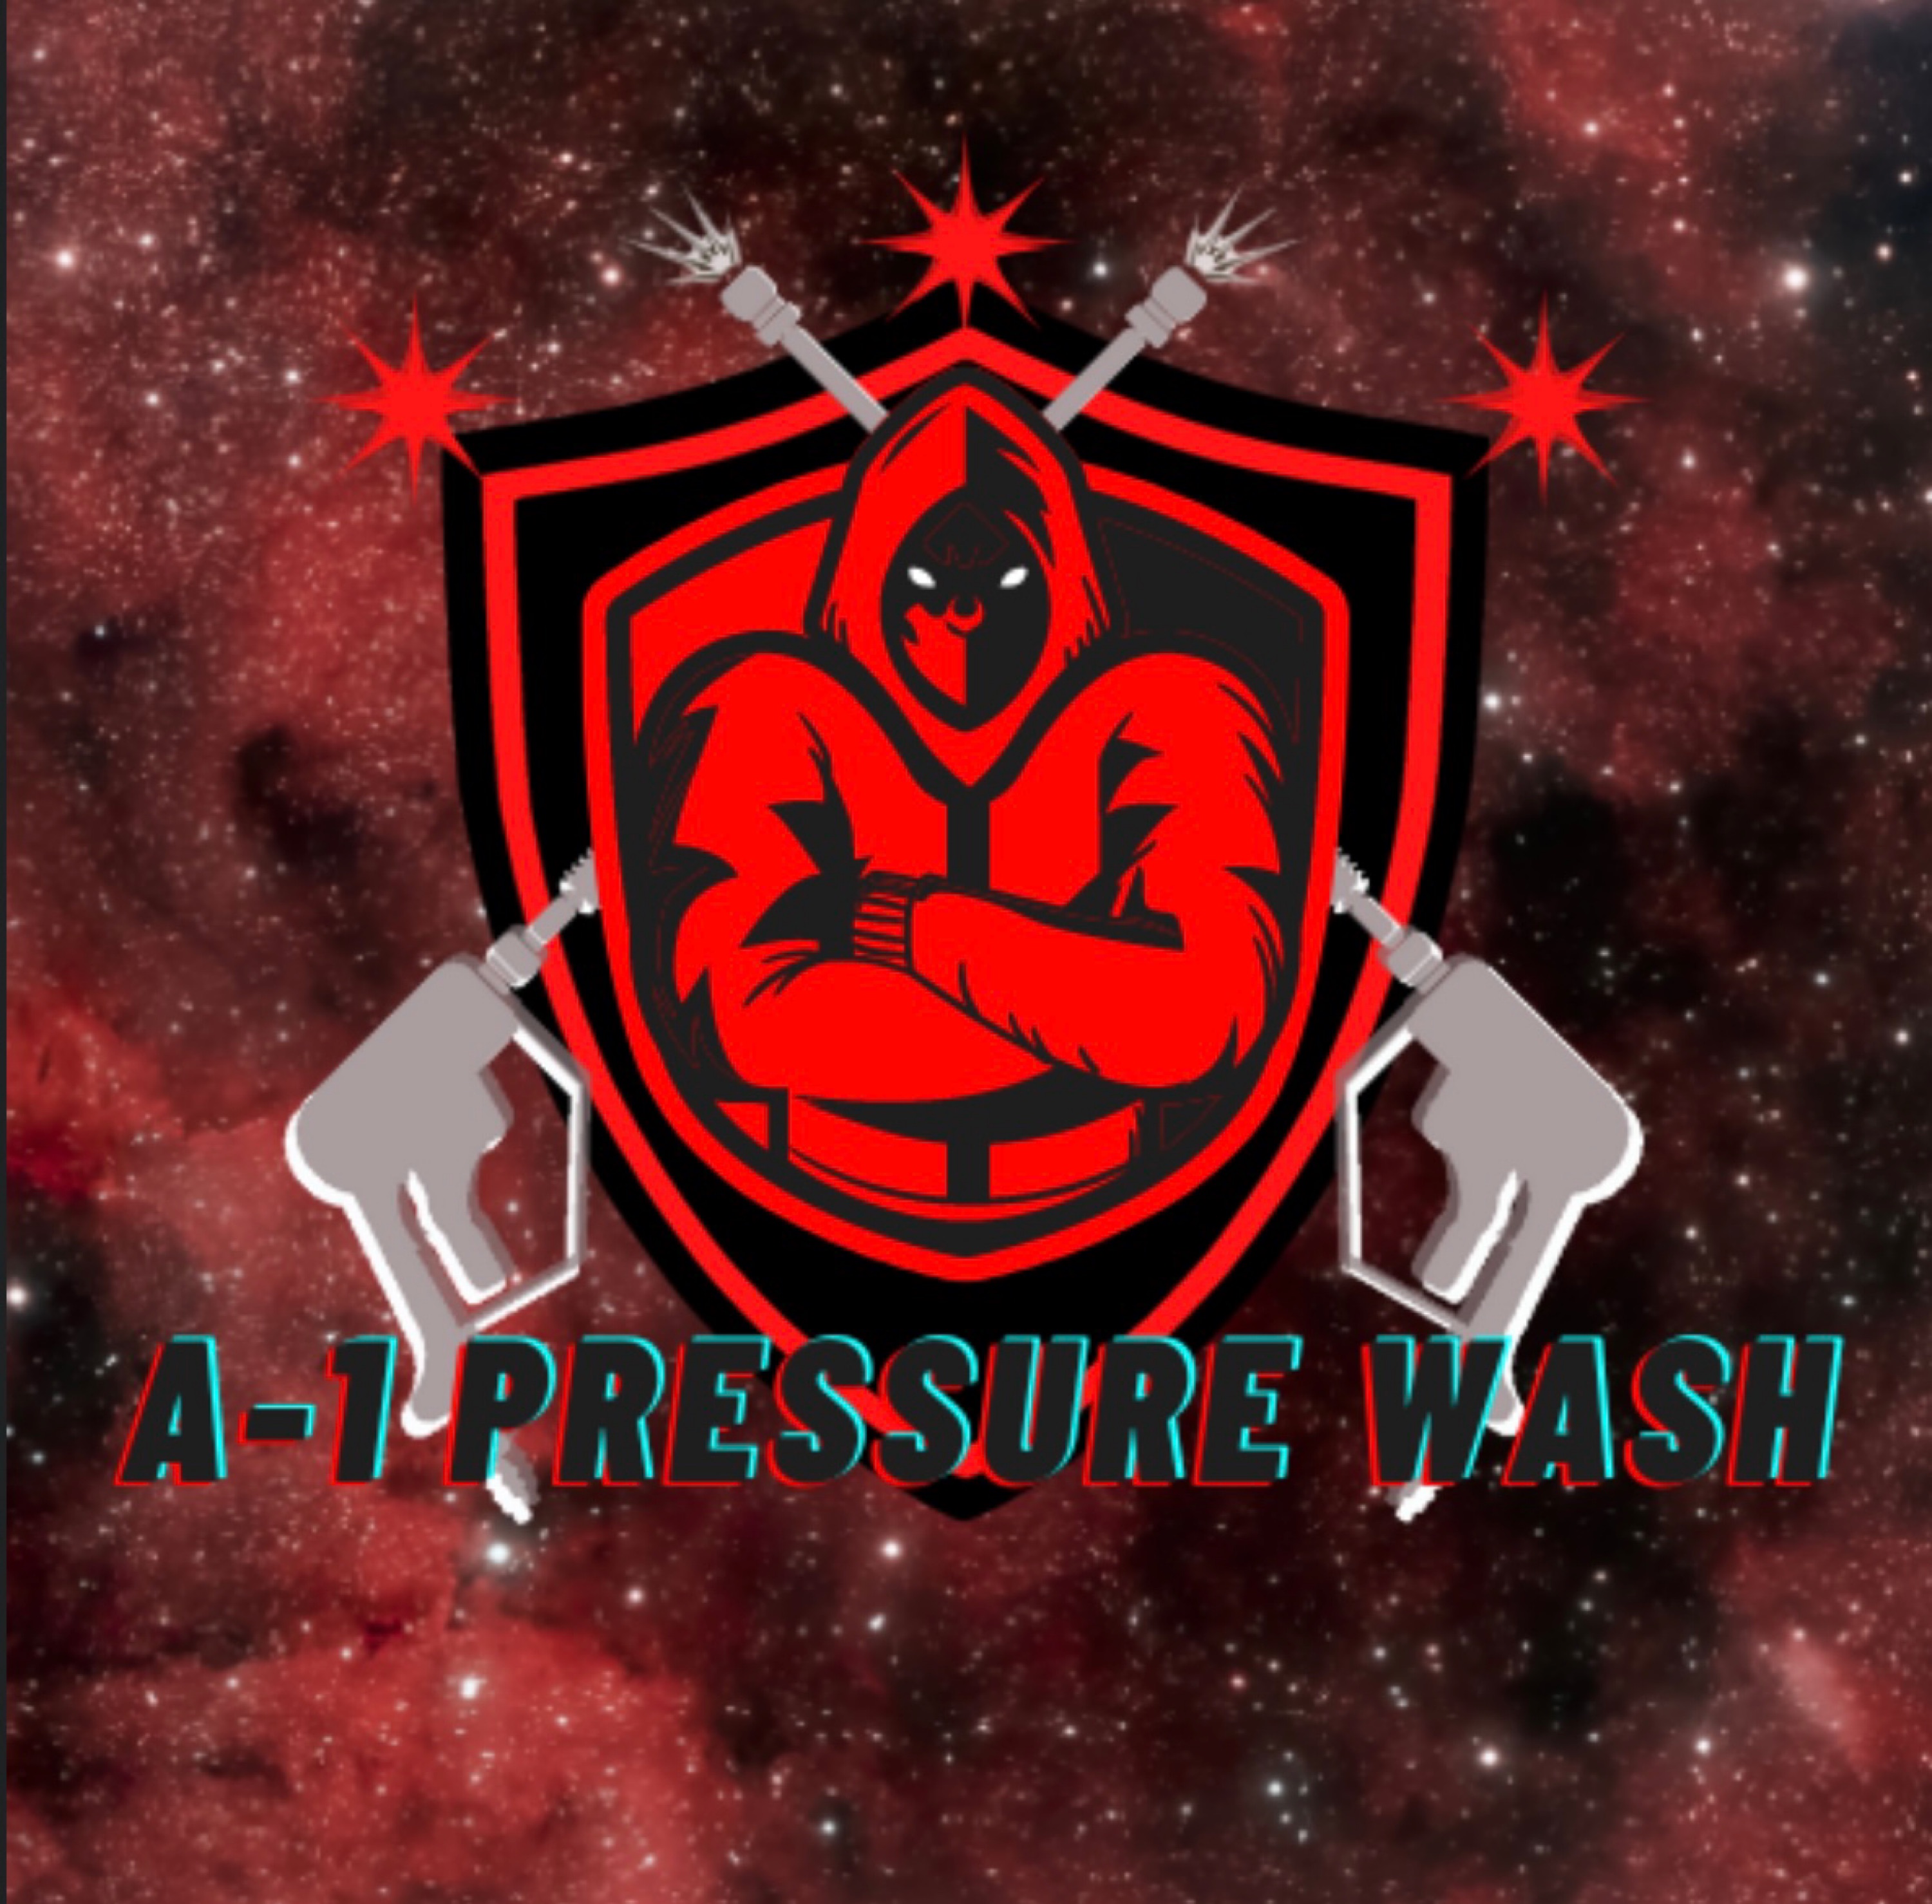 A-1 Pressure Wash 361 LLC Logo